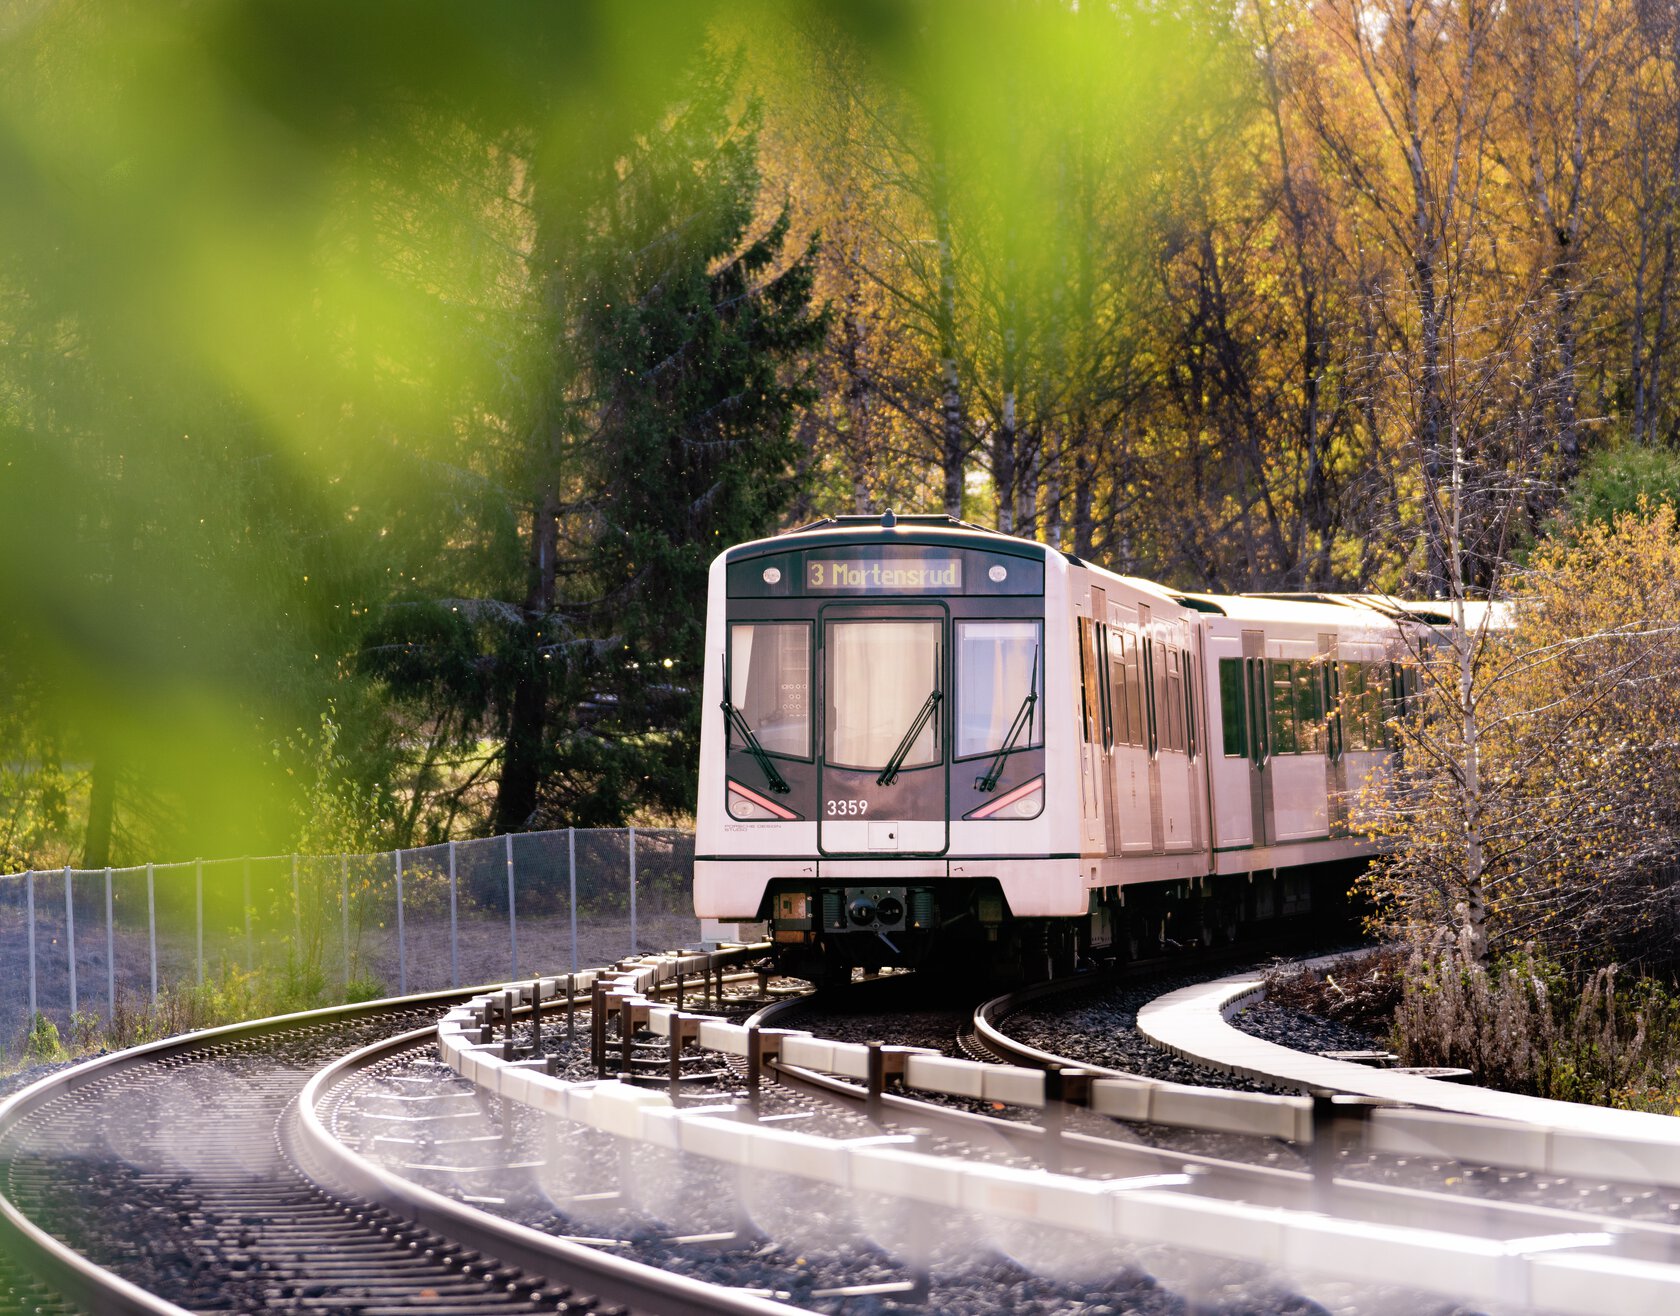 T-banen linje 3 kjører langs sporet forbi trær med høstløv. Foto.